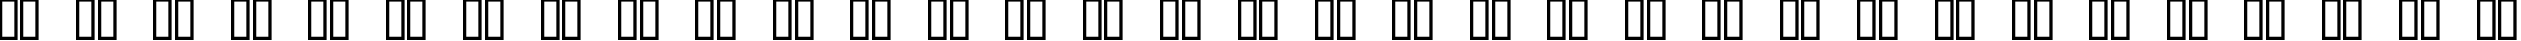 Пример написания русского алфавита шрифтом Clarendon Extended Bold